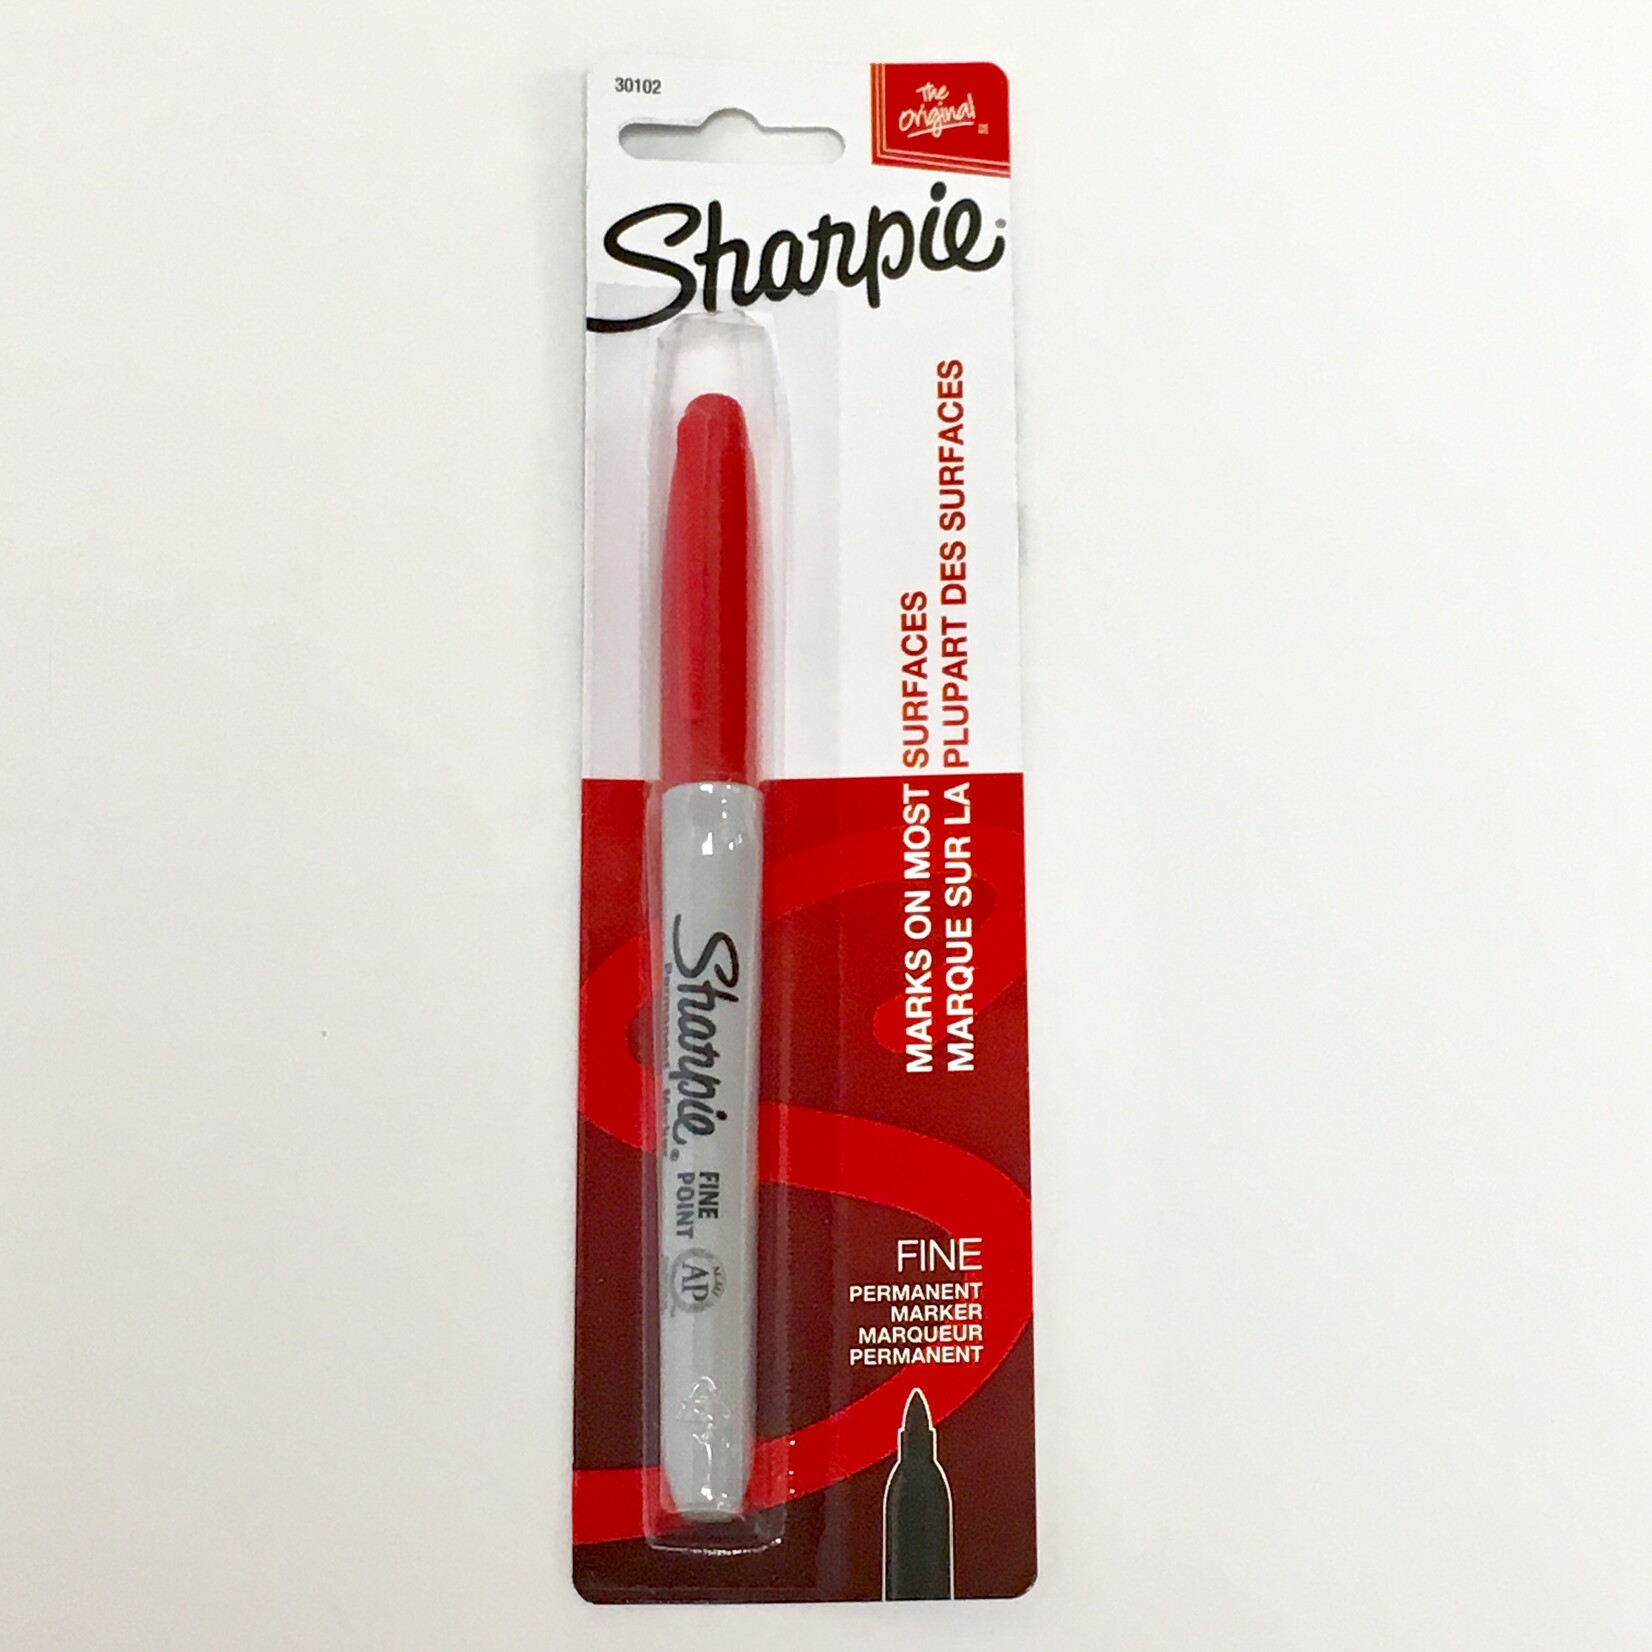 Sharpie Sharpie Permanent Marker Red Fine 1pk